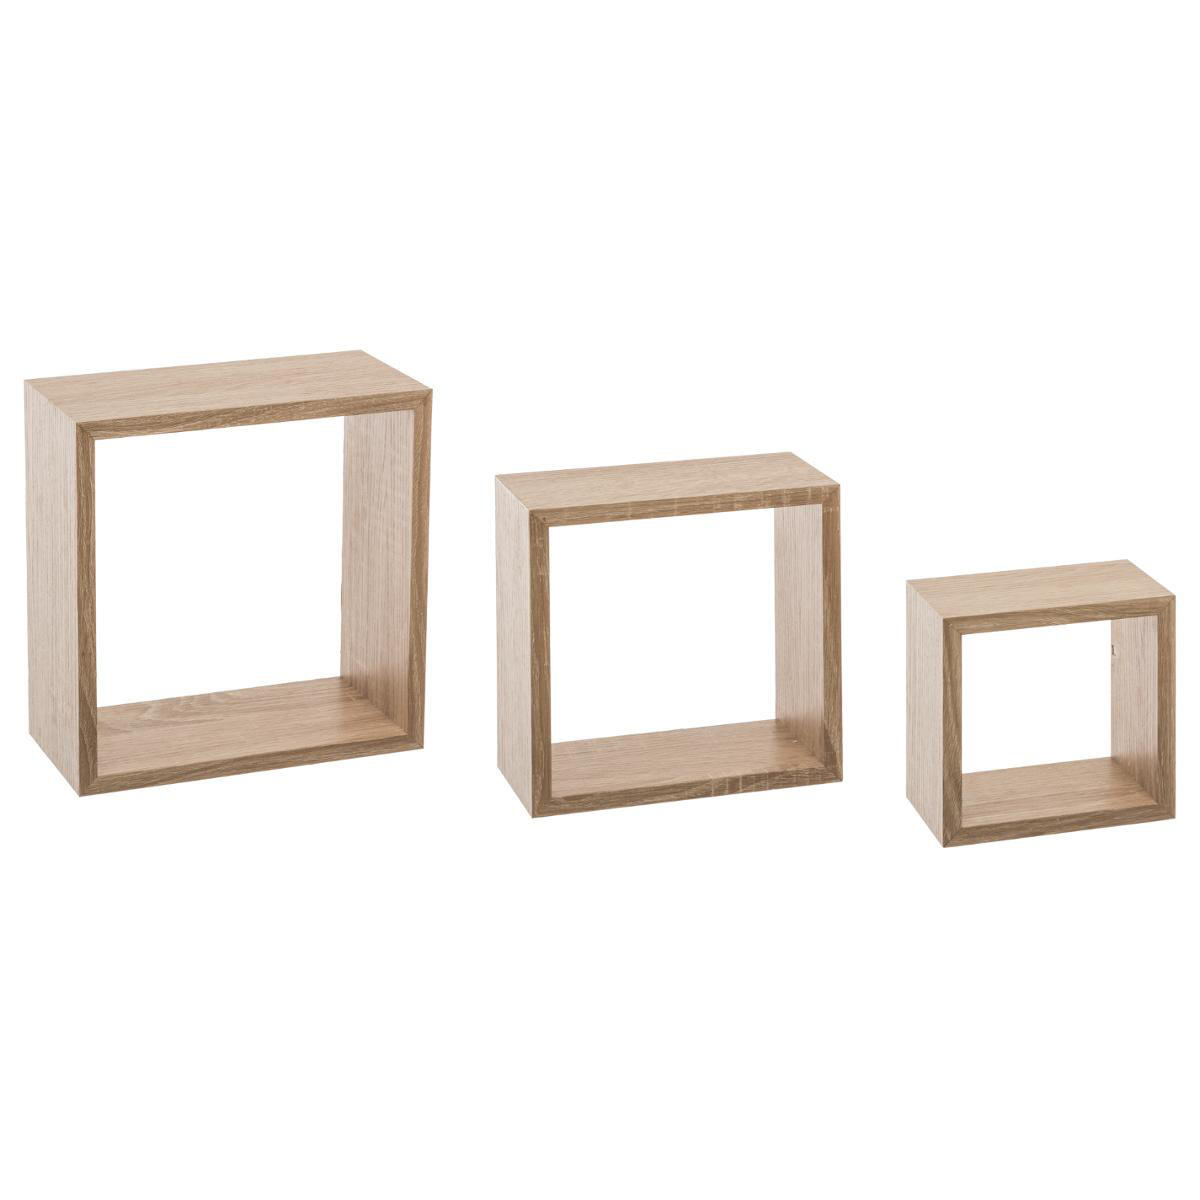 Lote de 3 estanterías Cubo Natural Modelo pequeño 1